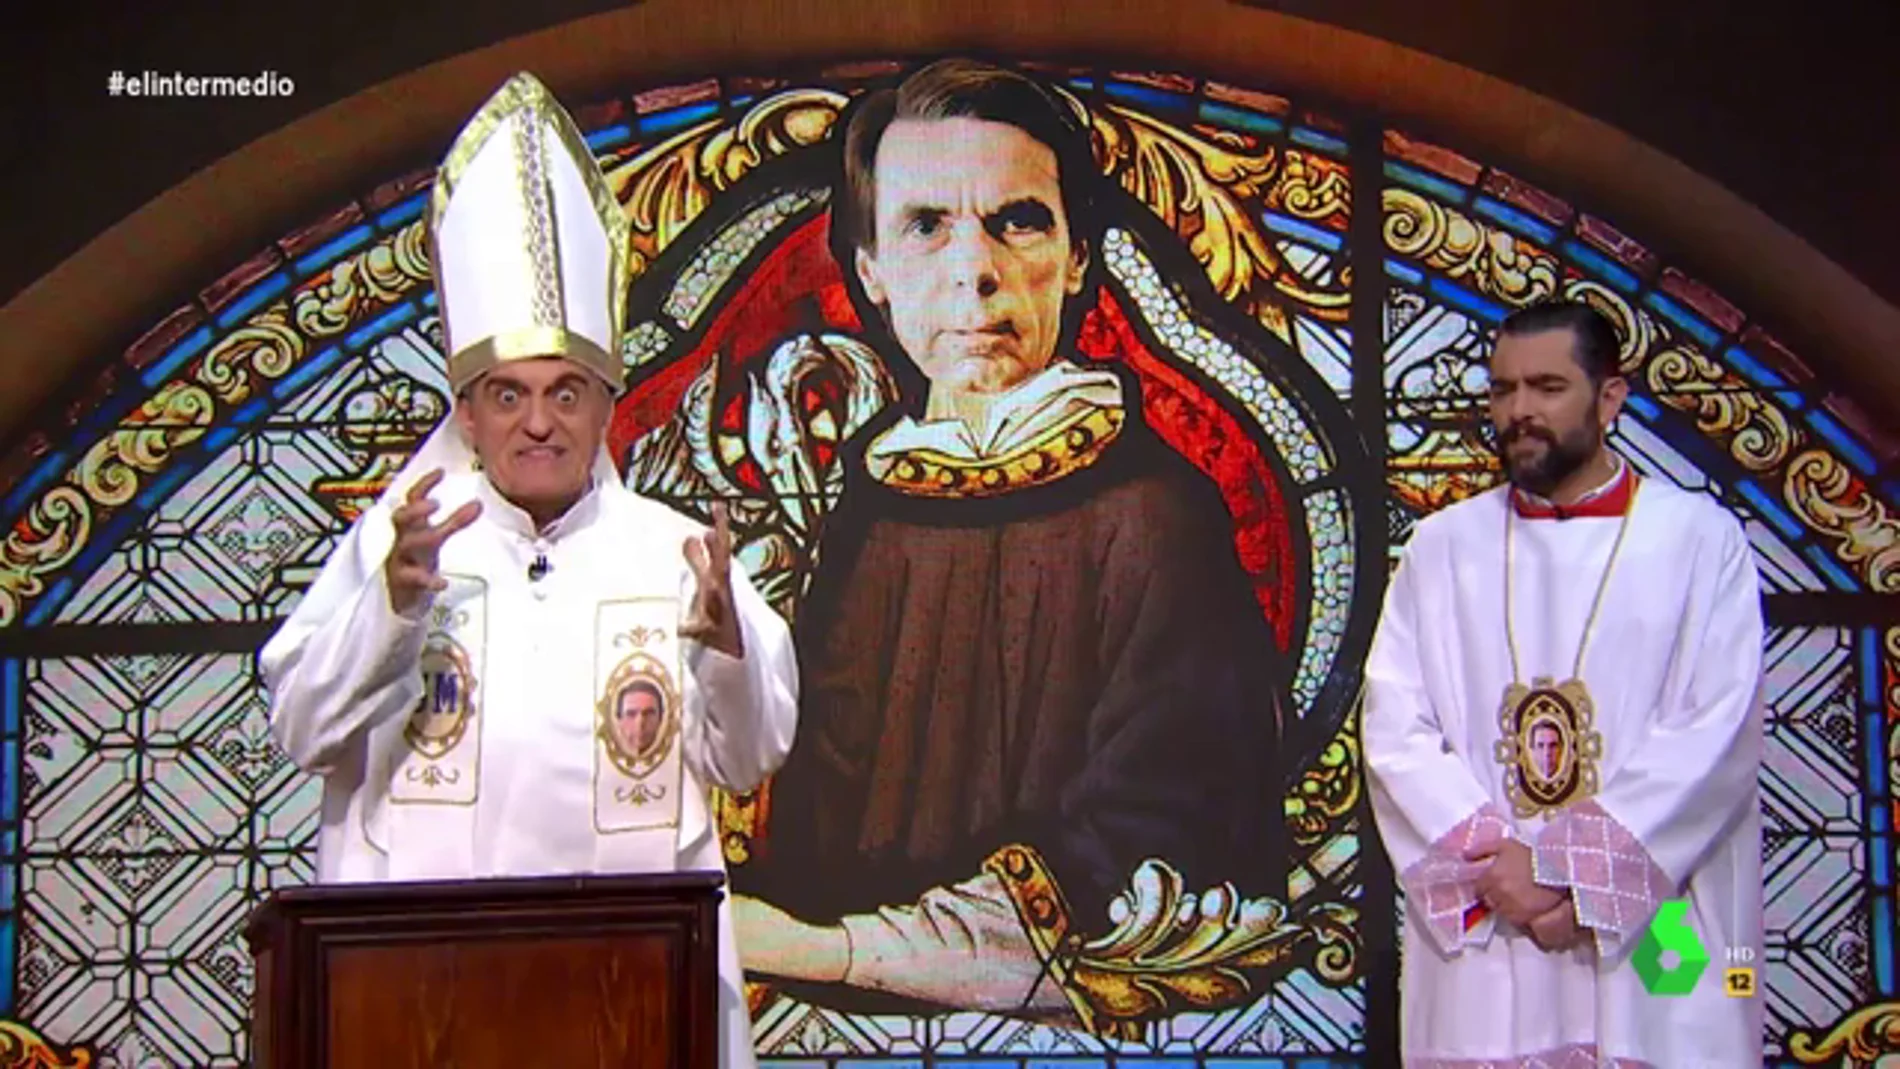 El papa Wyoming y el monaguillo Dani Mateo dedican una oración a Aznar: "Has venido a juzgar a rojos y titiriteros"